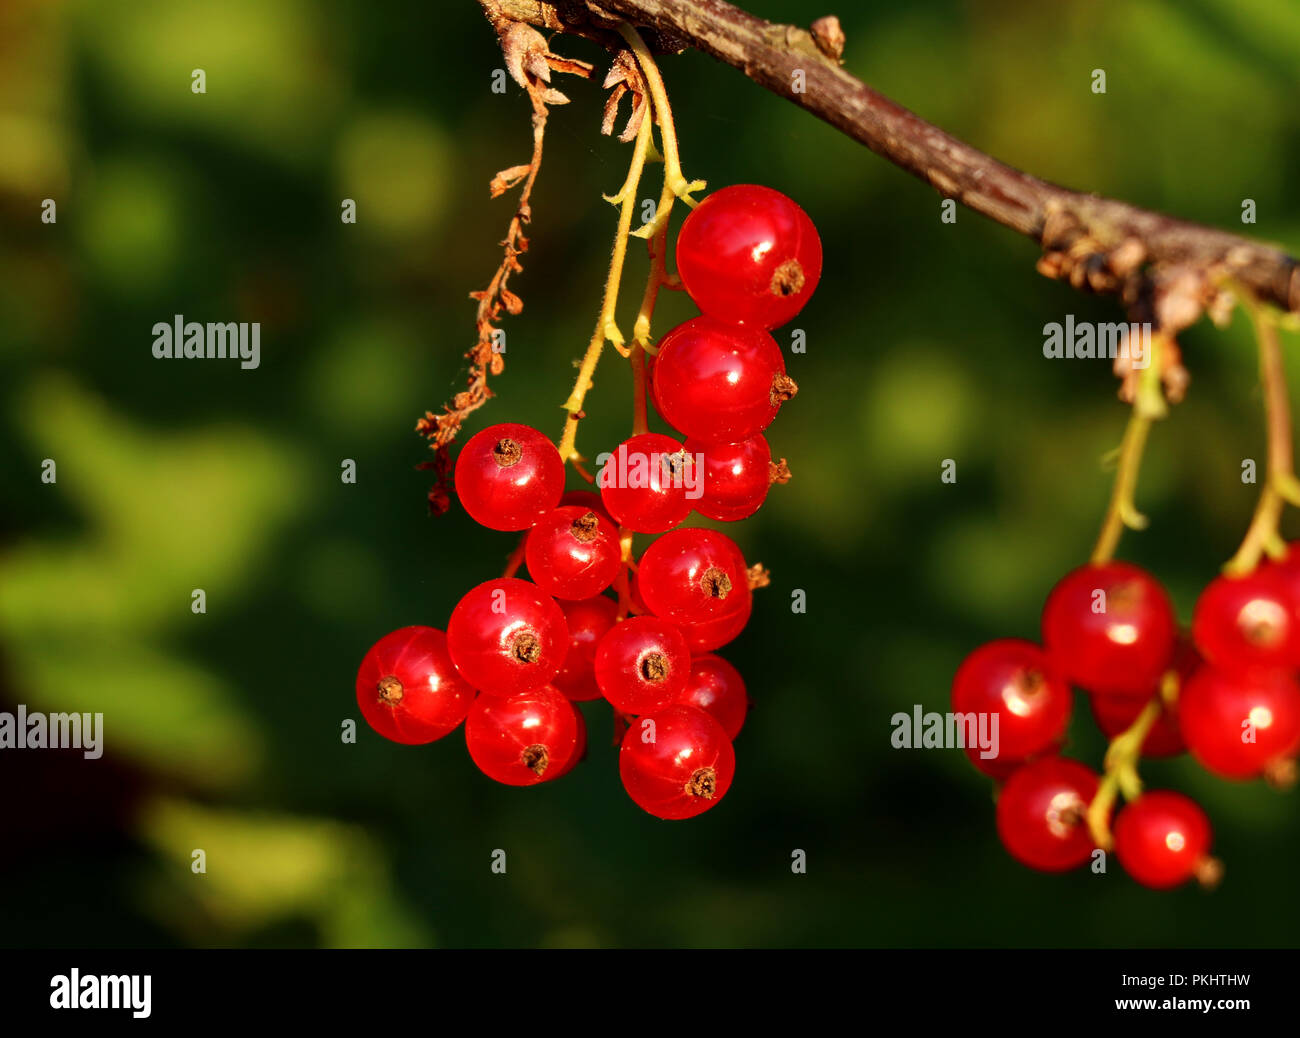 diese Idealer Ein Hängen Stockfotografie von vielen roten Zeitpunkt Beeren mit kleinen Beeren. Sammeln an Stamm der Johannisbeeren. für Alamy -